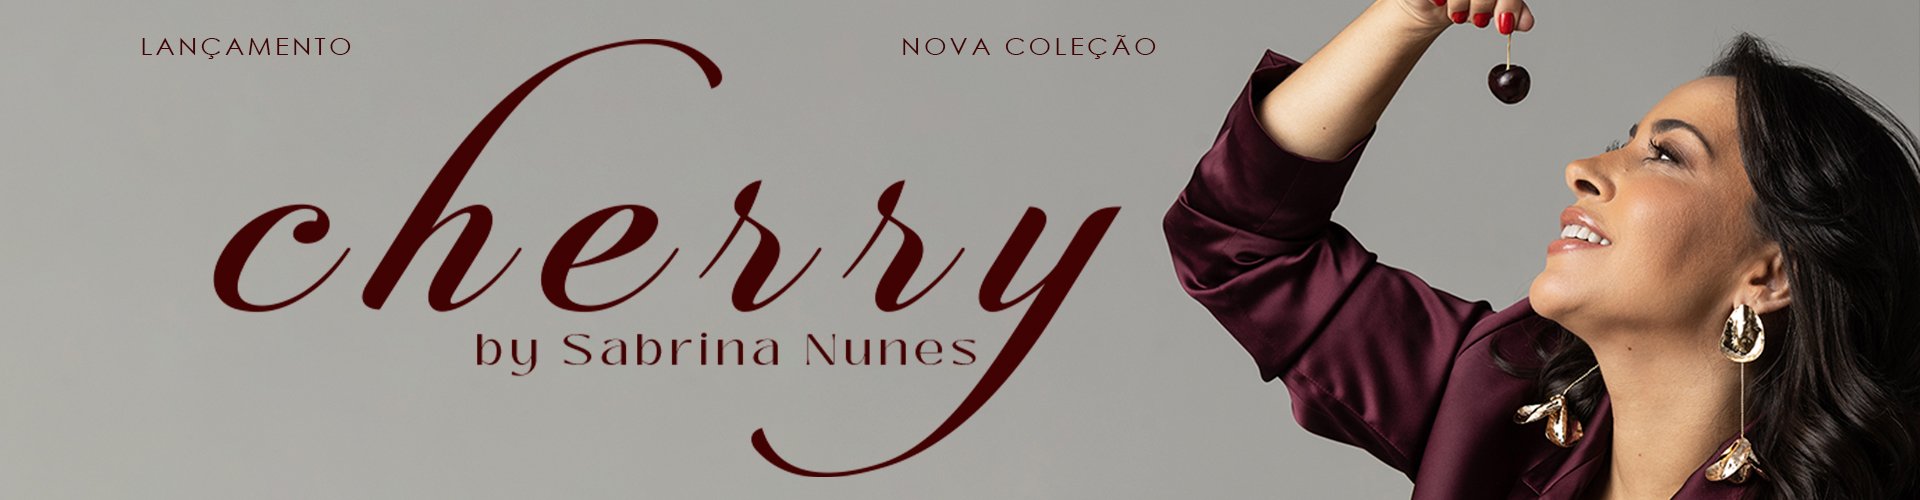 Coleção Cherry| By Sabrina Nunes